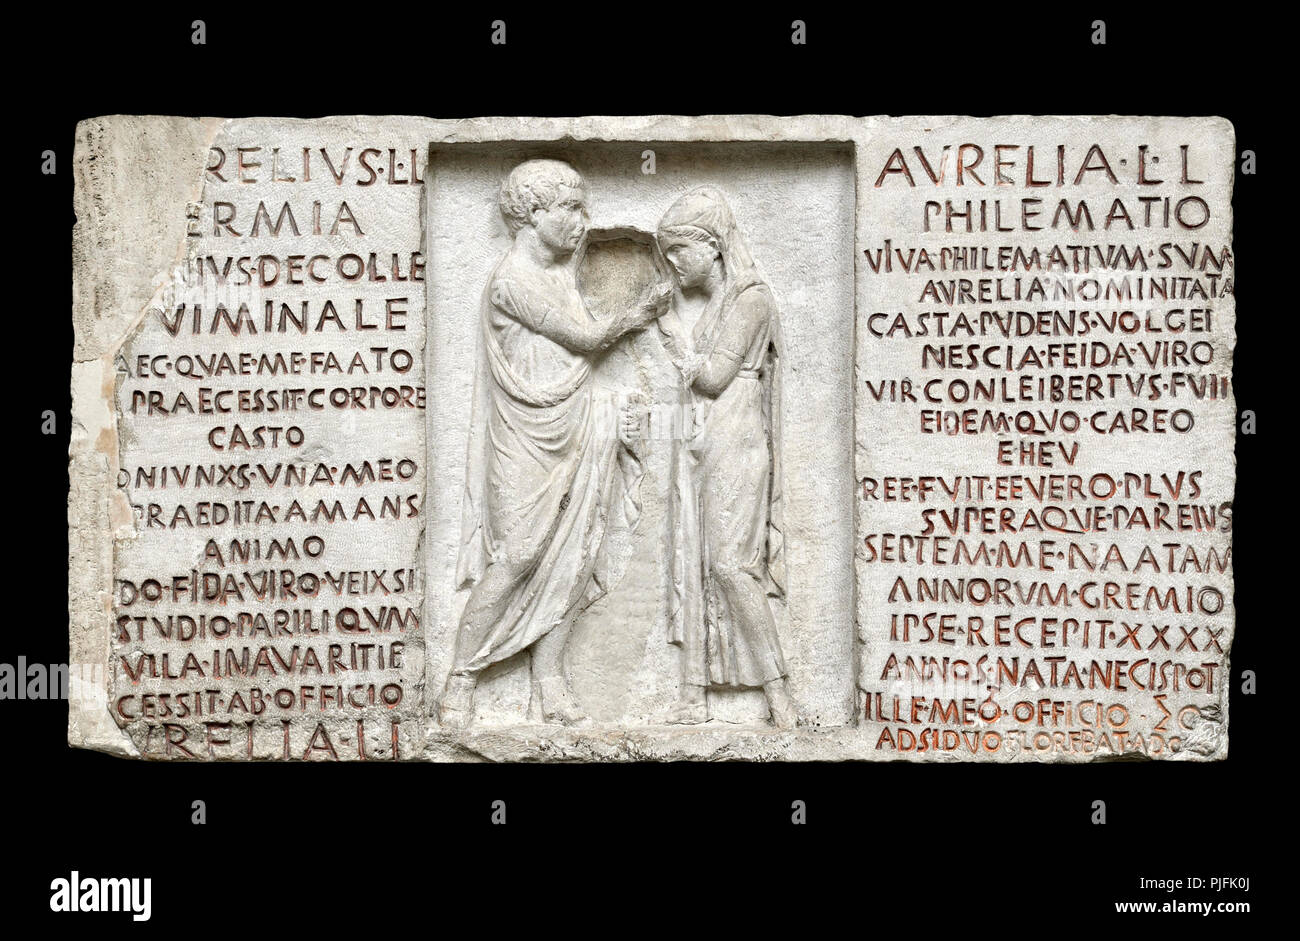 Inscritto Rilievo funerario scultura di Aurelio Hermia e moglie Aurelia Philematum (romana c80BC) da una tomba di Via Nomentana, Roma. (Intaglio) Britis Foto Stock